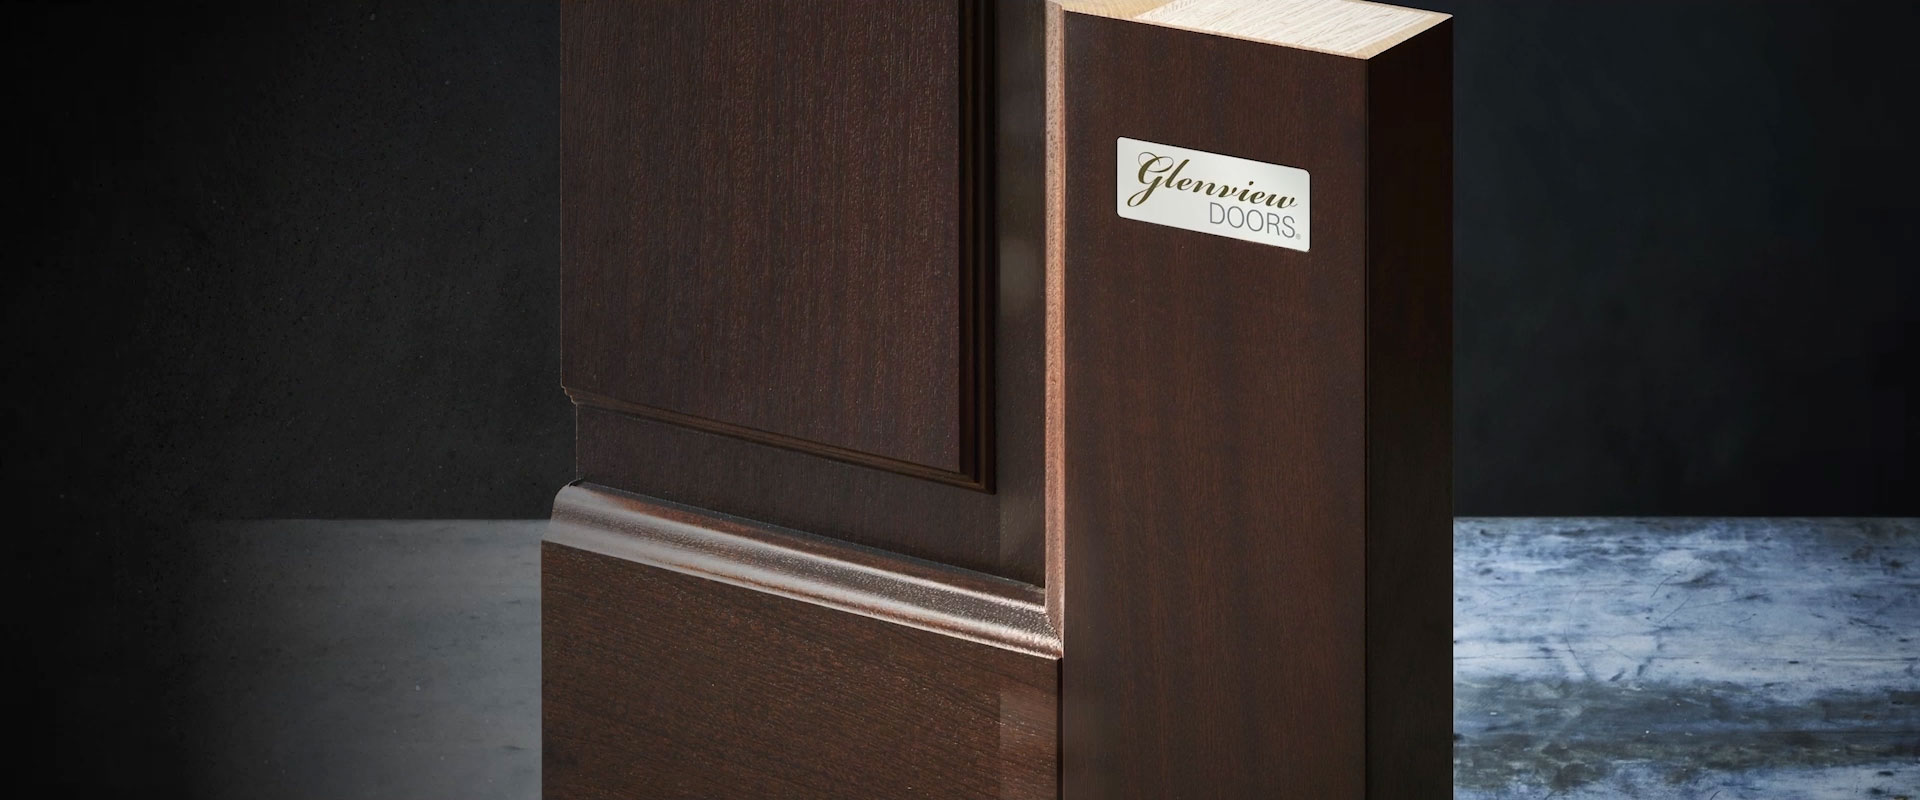 Craftsmanship - Glenview Doors Video